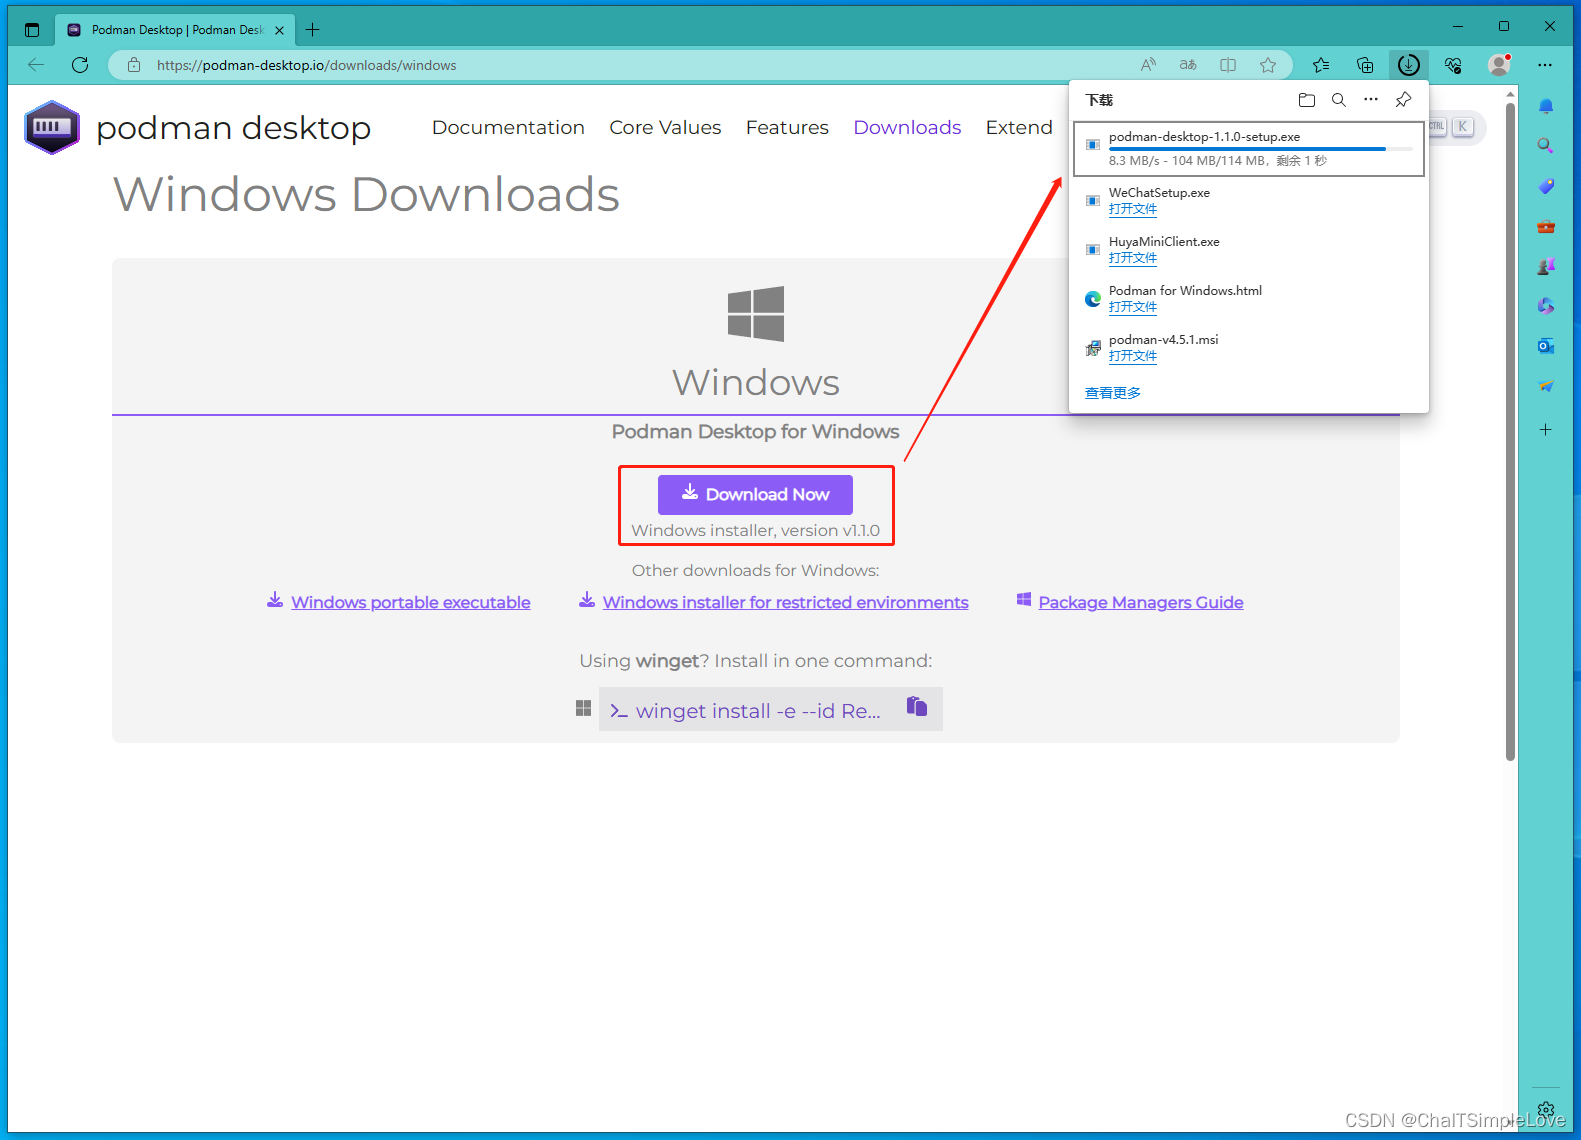 Windows installer, version v1.1.0